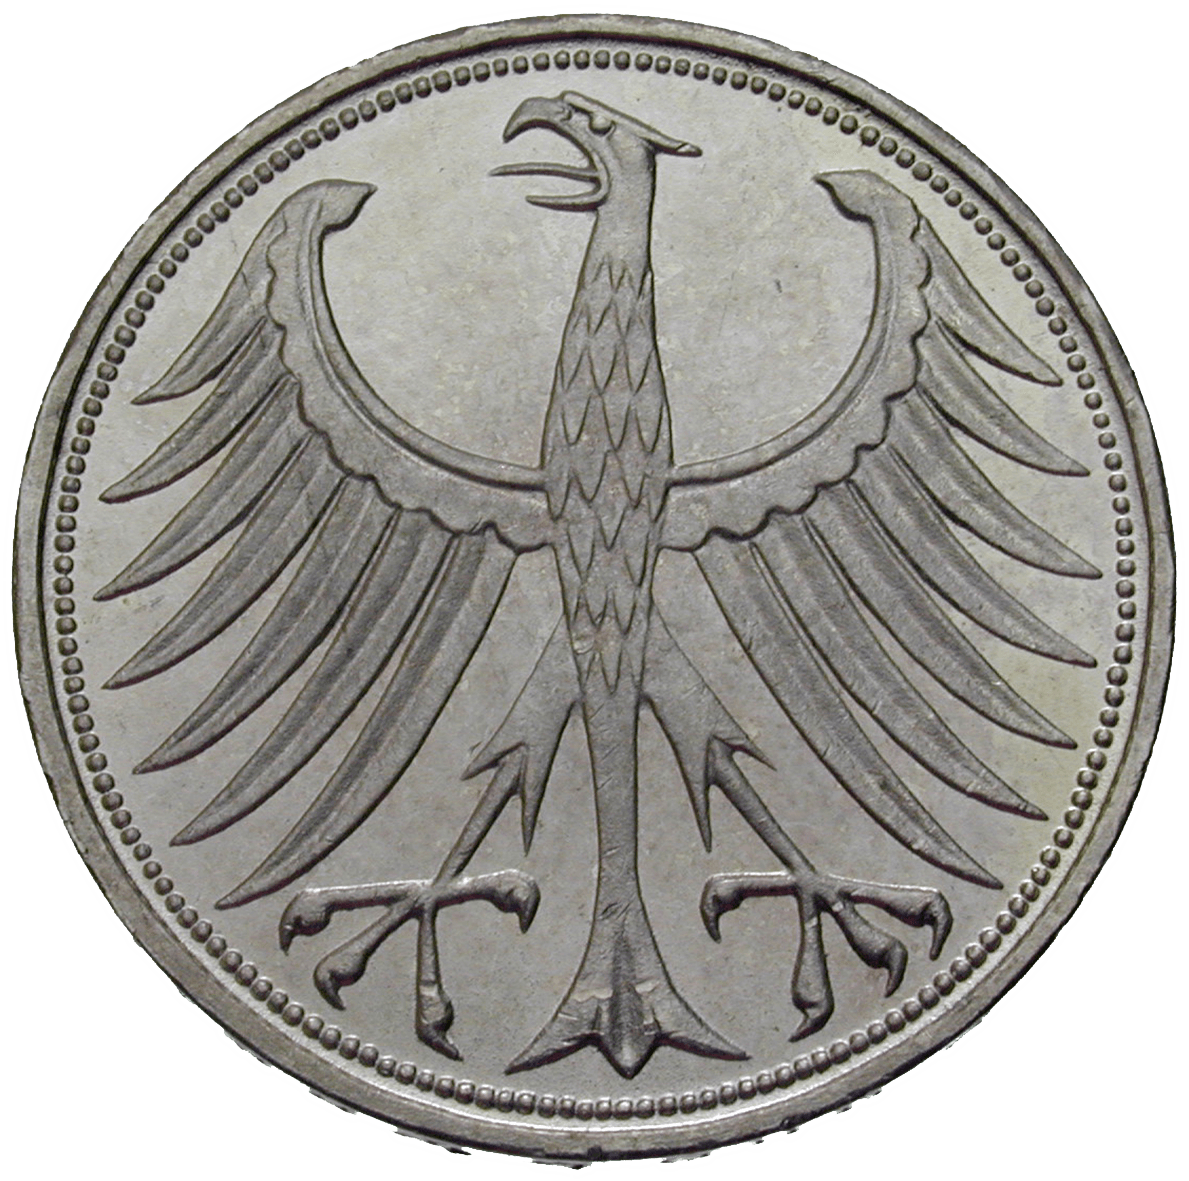 Bundesrepublik Deutschland, 5 Deutsche Mark 1956 (reverse)